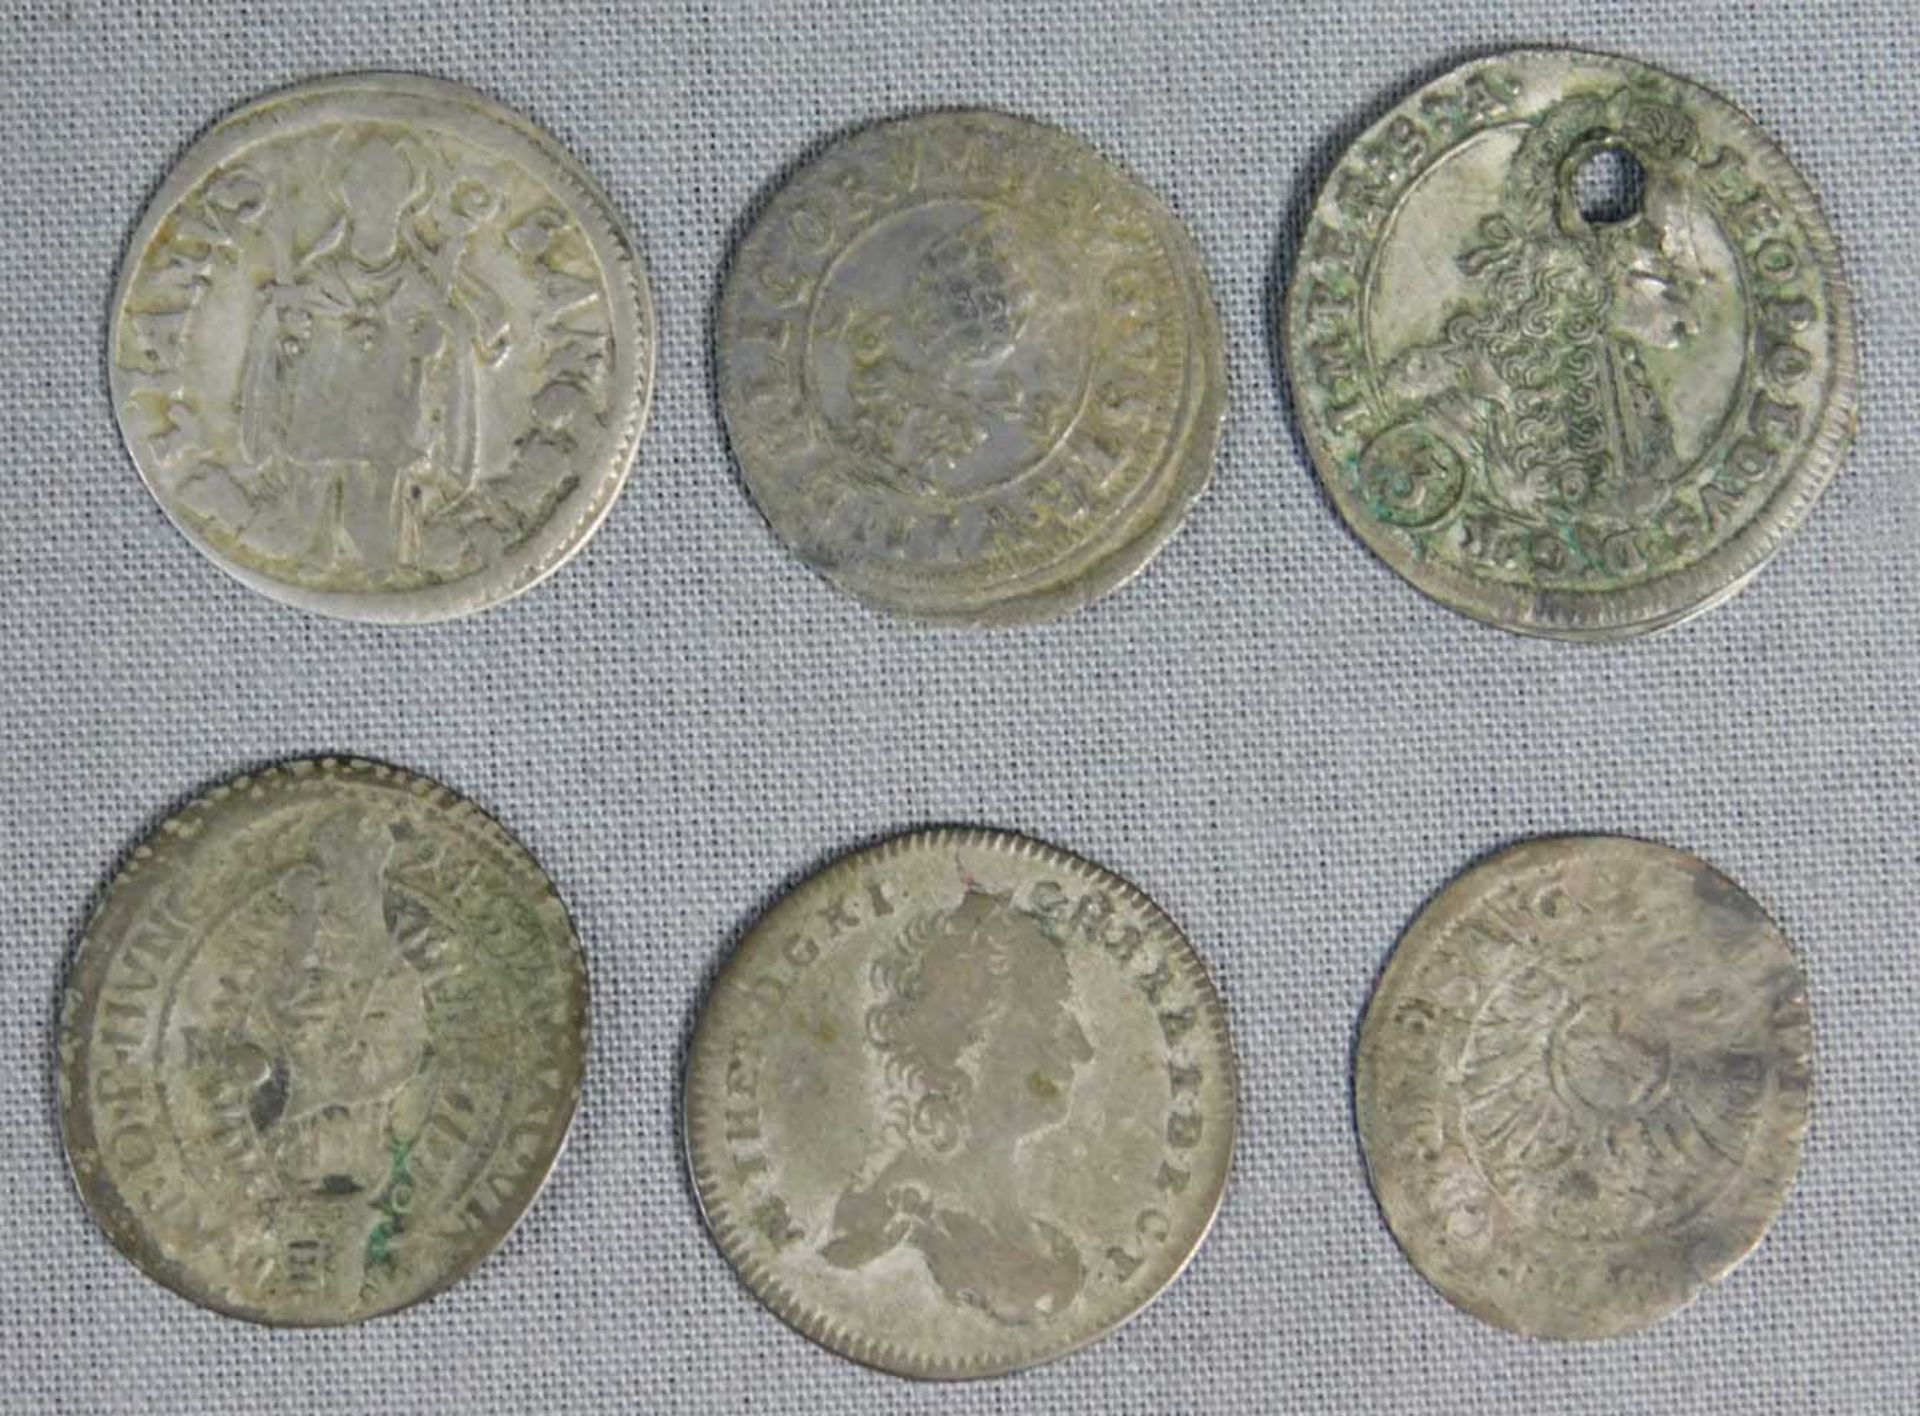 6 alte Münzen. Wohl Silber.